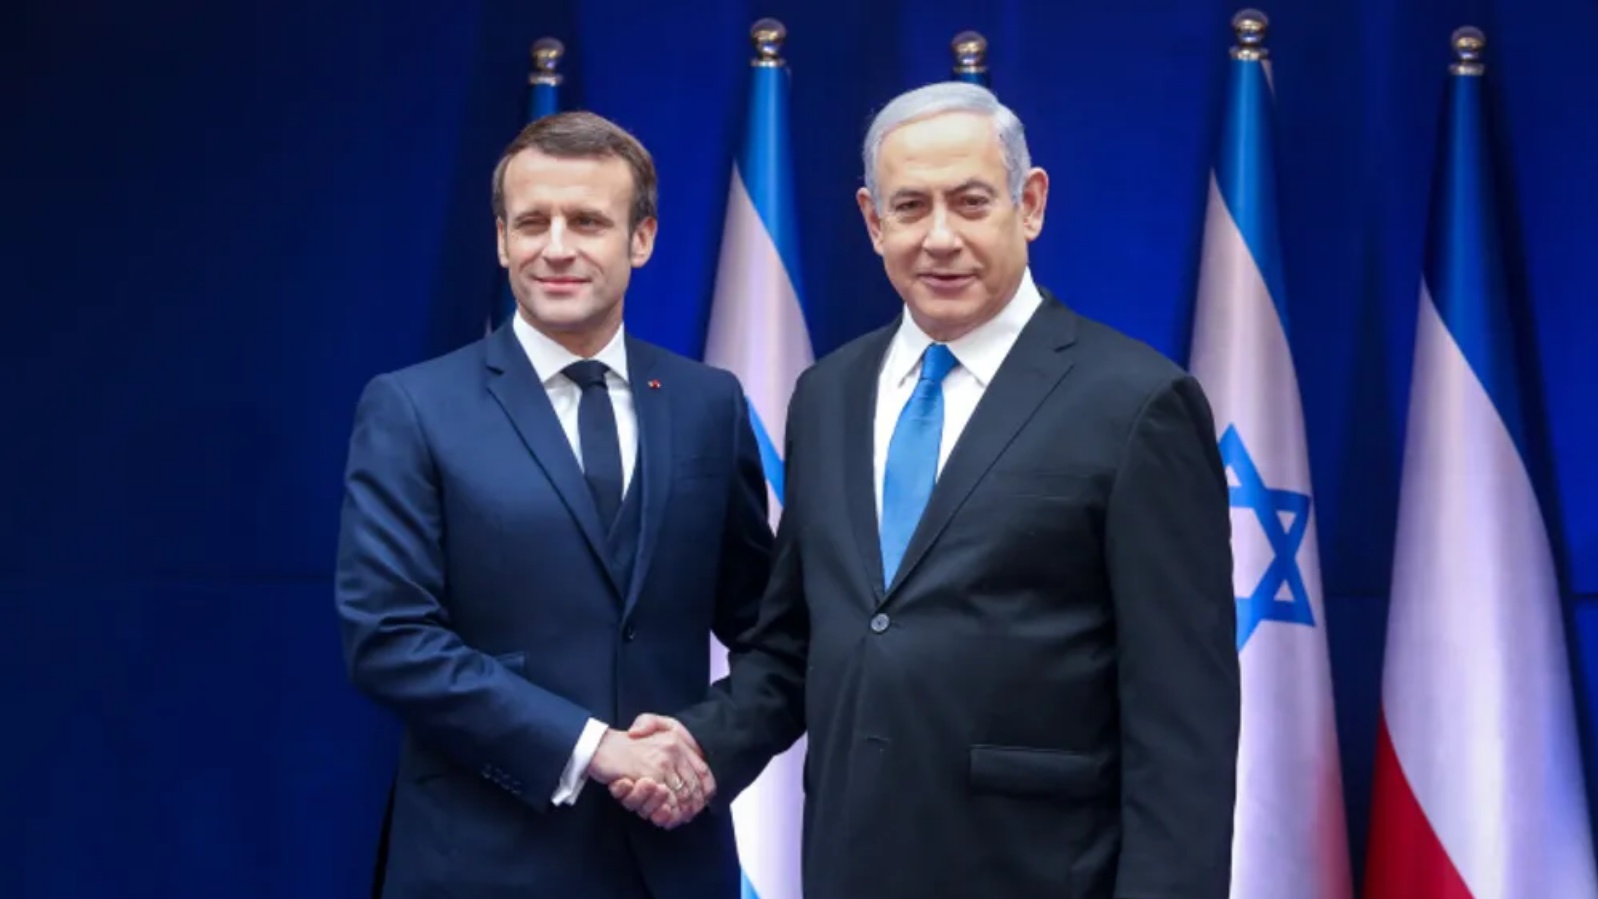 رئيس الوزراء الإسرائيلي بنيامين نتنياهو يقف لالتقاط صورة مع الرئيس الفرنسي إيمانويل ماكرون في منزل رئيس الوزراء في القدس، 22 يناير 2020.